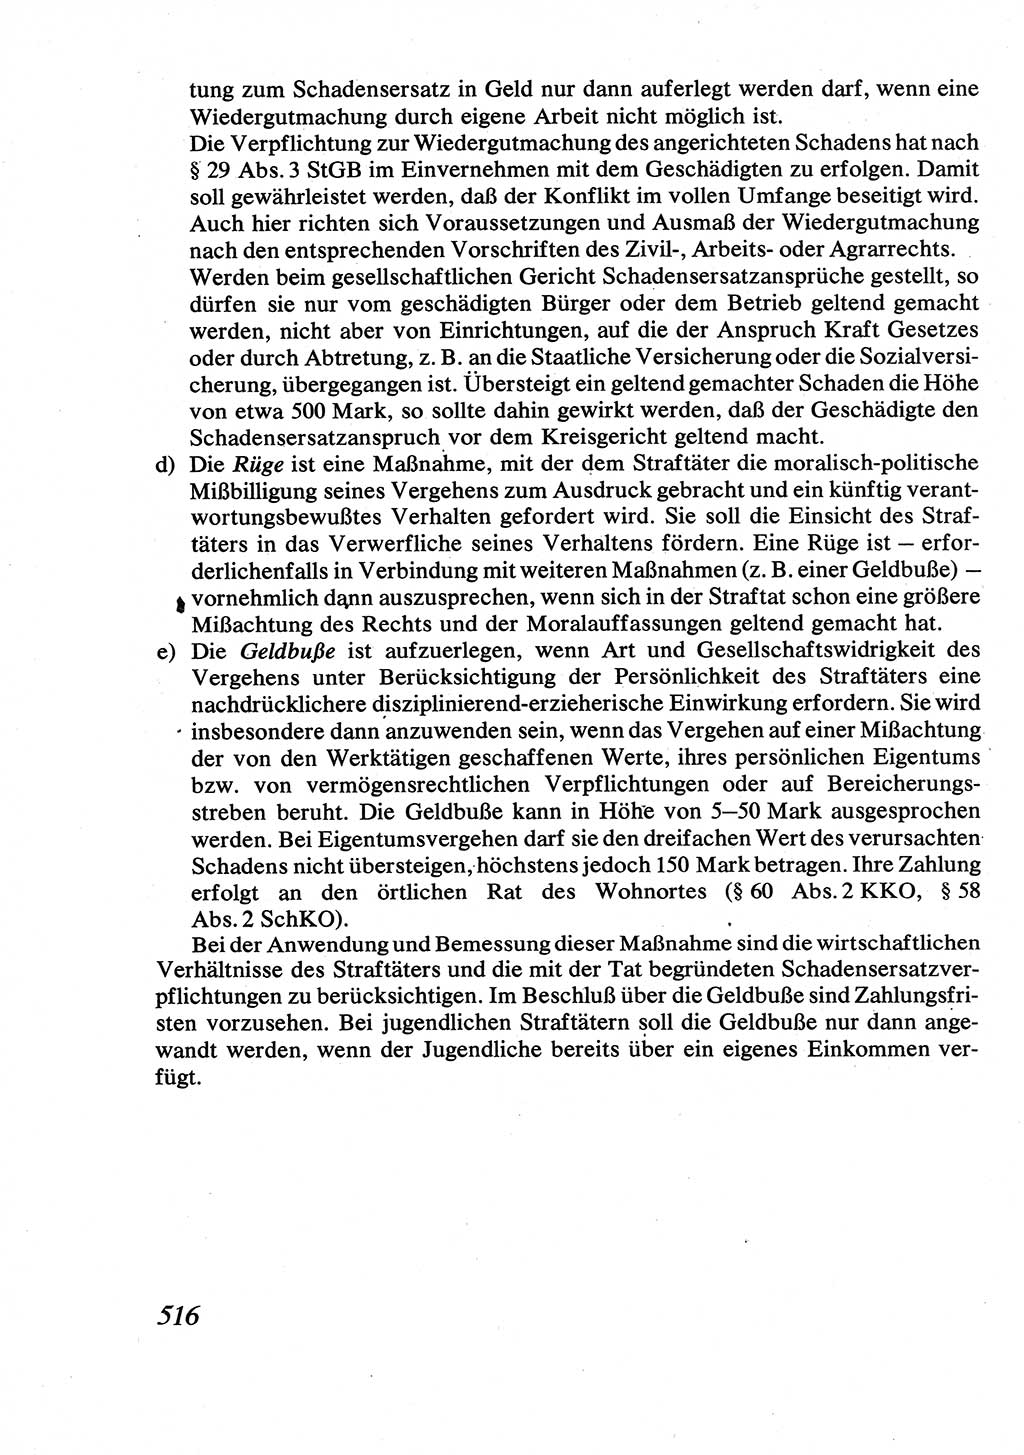 Strafrecht [Deutsche Demokratische Republik (DDR)], Allgemeiner Teil, Lehrbuch 1976, Seite 516 (Strafr. DDR AT Lb. 1976, S. 516)